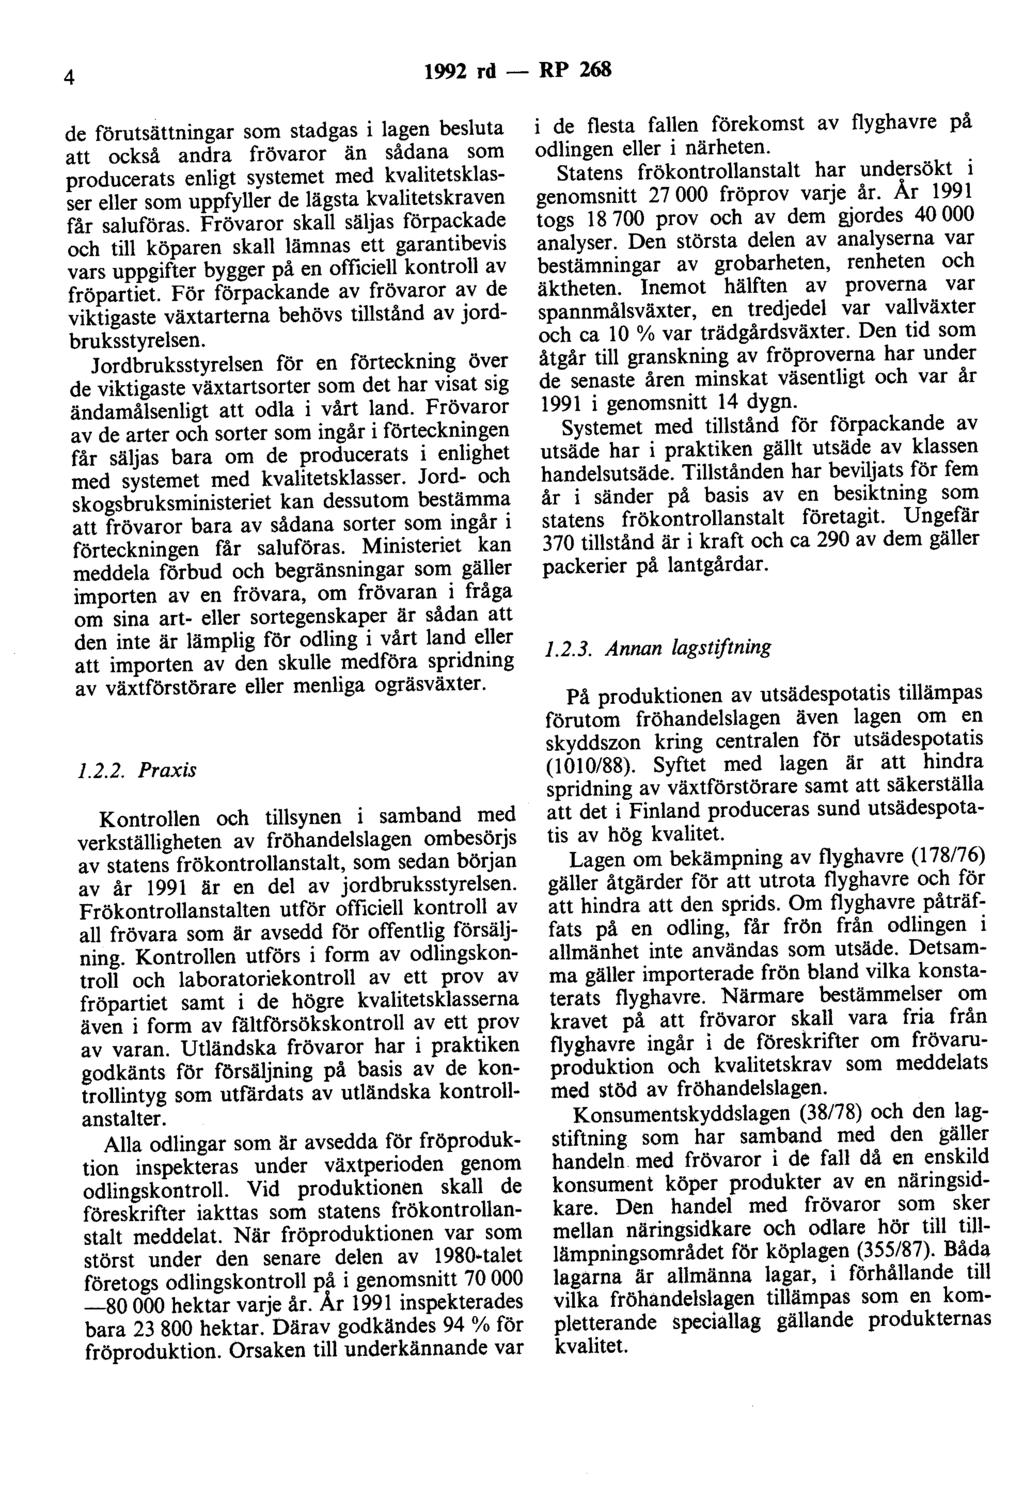 4 1992 rd- RP 268 de förutsättningar som stadgas i lagen besluta att också andra frövaror än sådana som producerats enligt systemet med kvalitetsklasser eller som uppfyller de lägsta kvalitetskraven